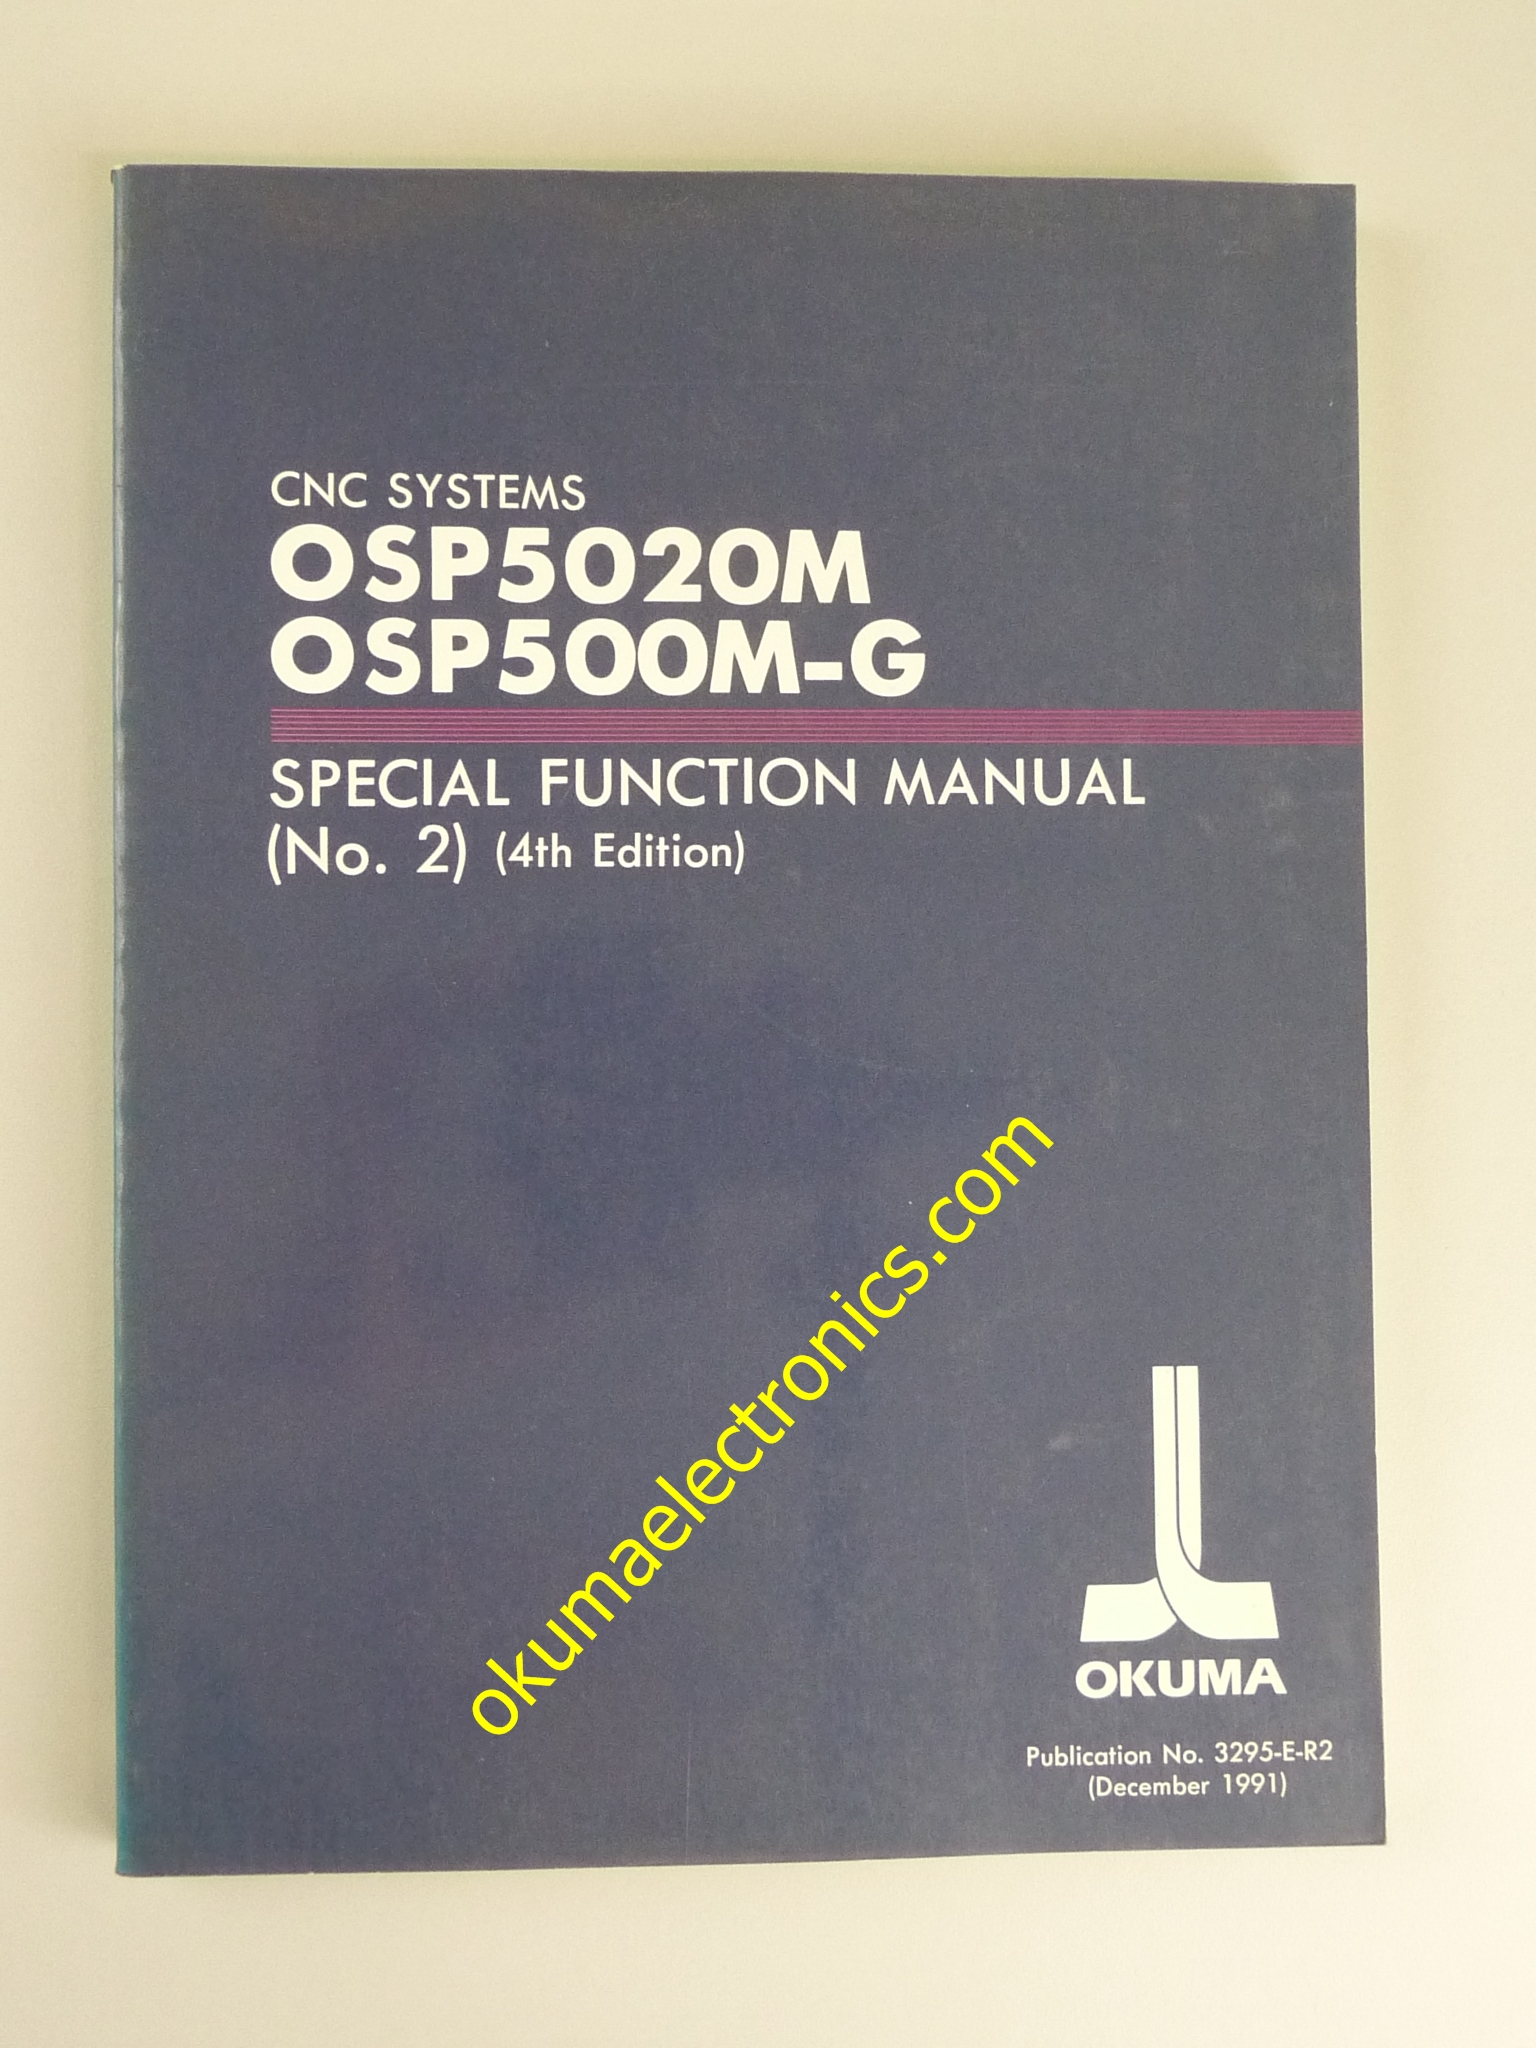 Okuma SpecialFunctionManual(No2)-4thEd-Dec91